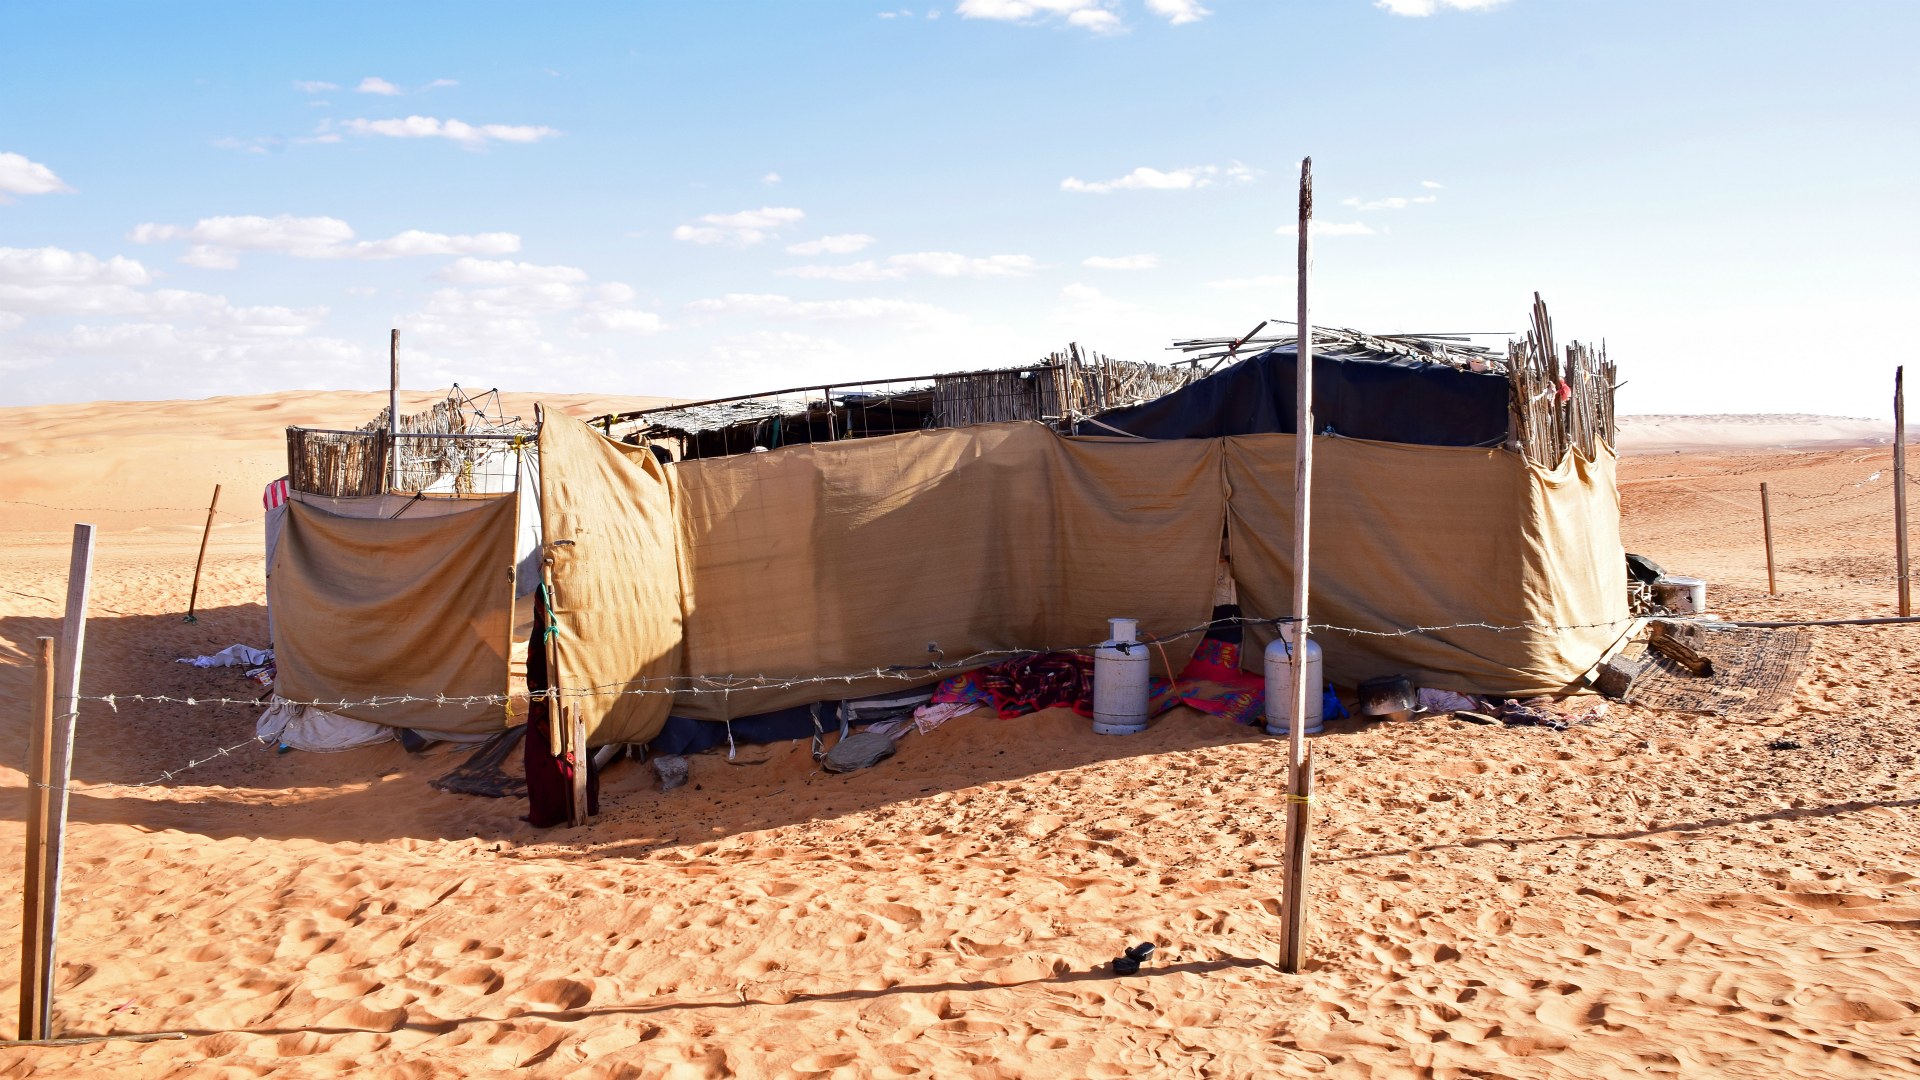 Bedouin Shelter, Al Sharqiya Sands